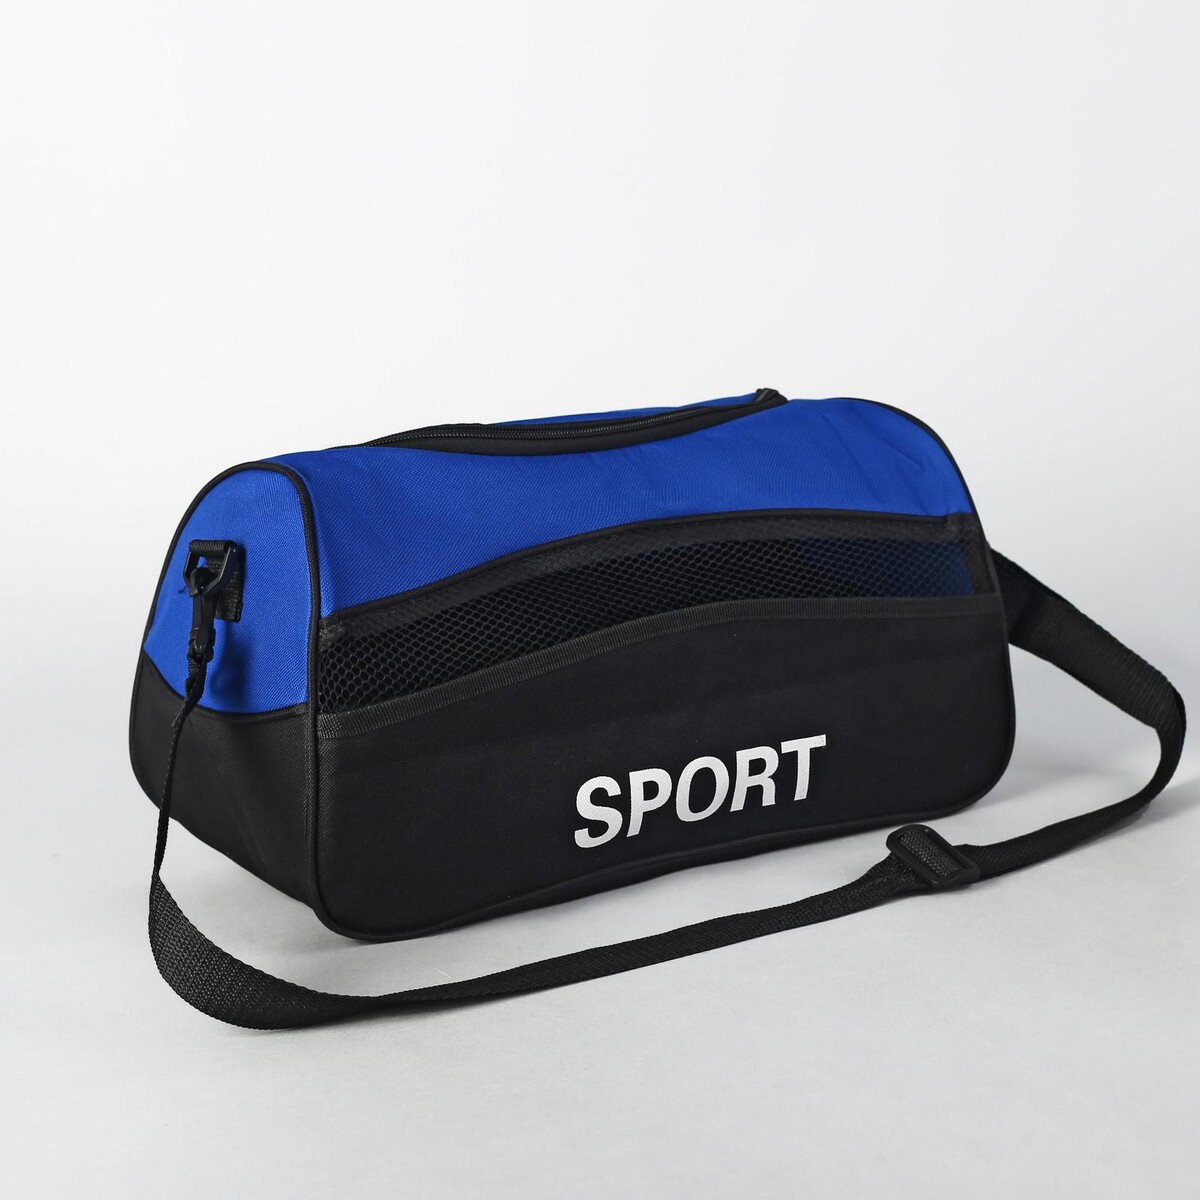 Сумка спортивная на молнии, наружный карман, длинный ремень, цвет синий/черный туалет средний с сеткой 36 х 26 х 6 5 см синий